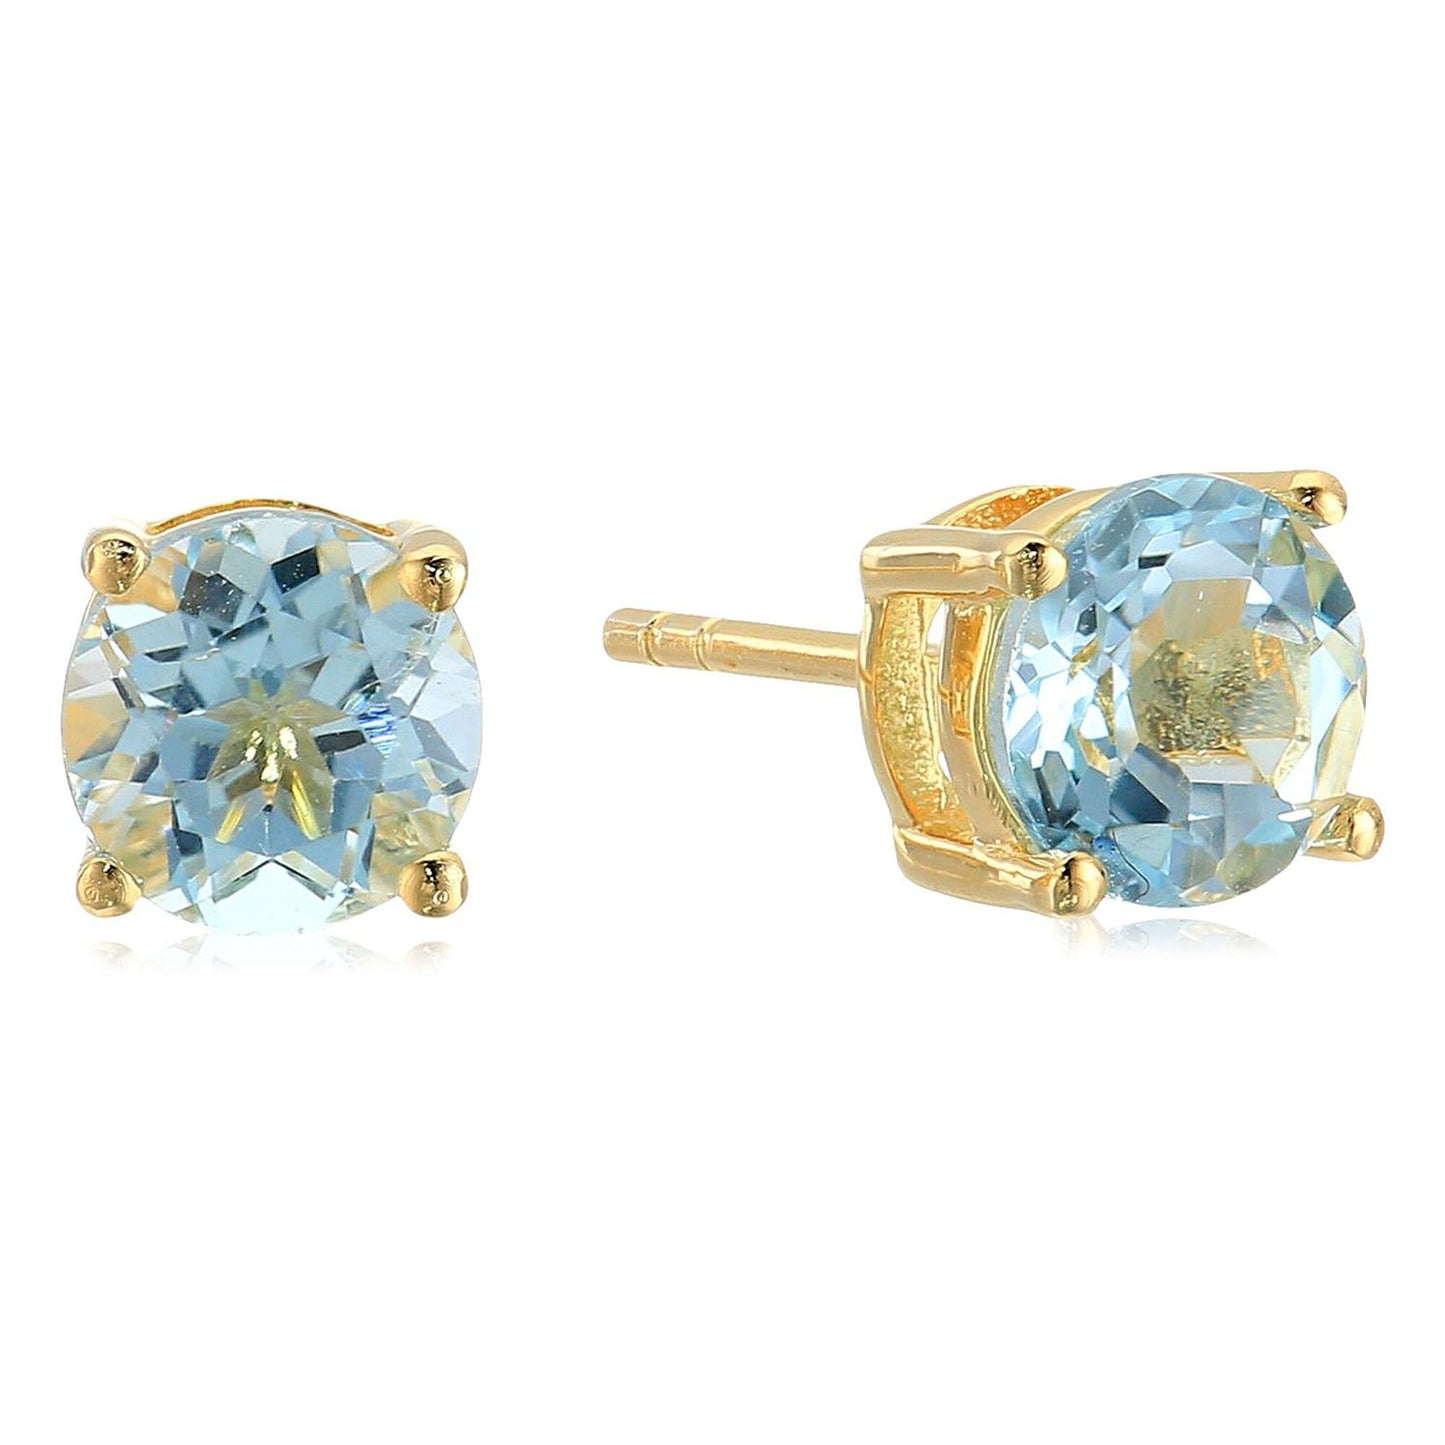 Natural Sky Blue Topaz With Diamond Gemstone Necklace With Studs Earring, Necklace With Earring Set, Blue Topaz Gemstone, Bridal Jewelry Set